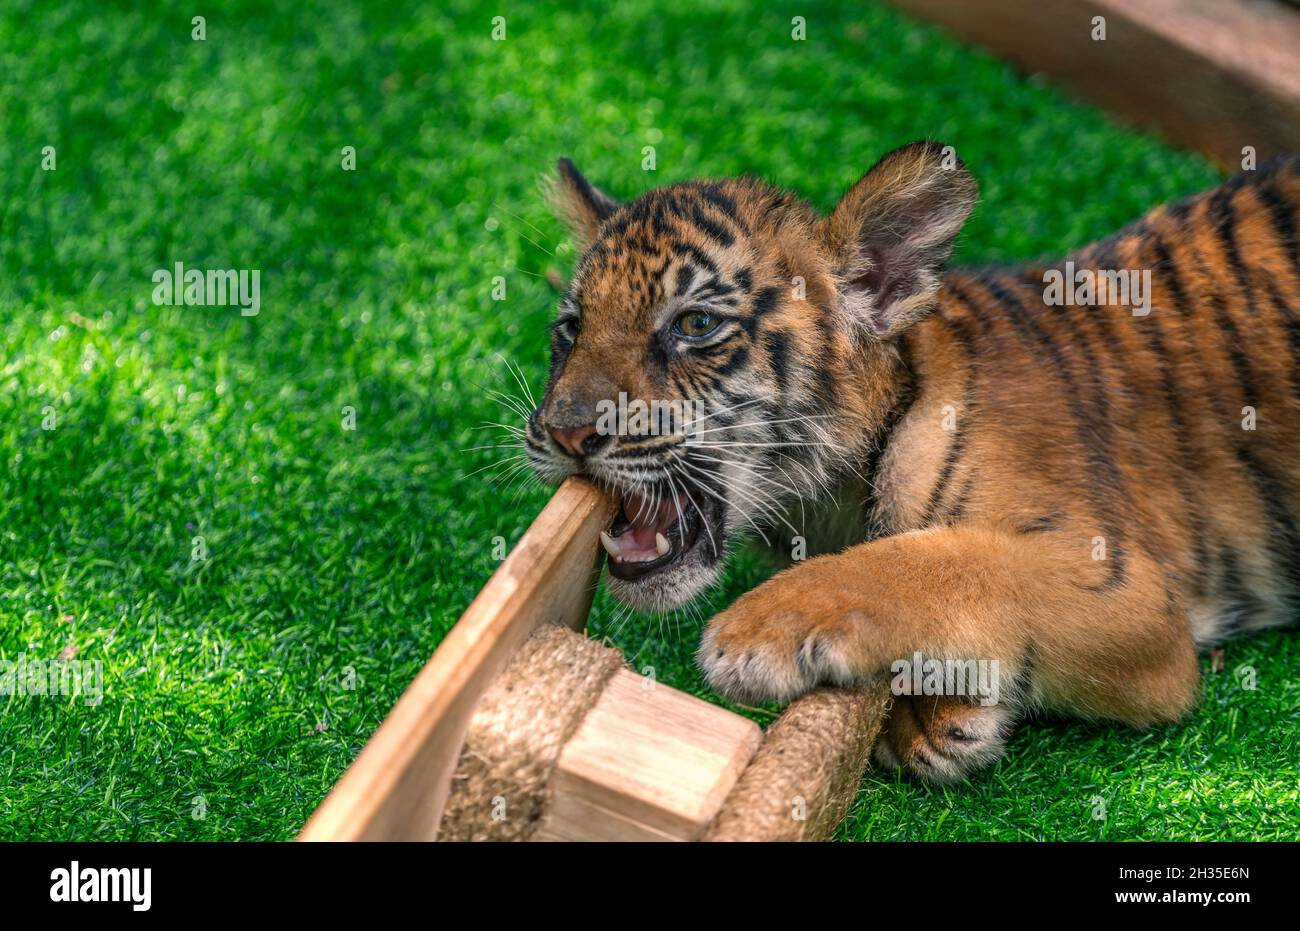 Tiger Bengal Junge spielt oder beißt Holzspielzeug auf einem Graskäfig in einem Zoo von Thailand. Nahaufnahme Bengalisches Tigerkub, natürliches Licht. Stockfoto